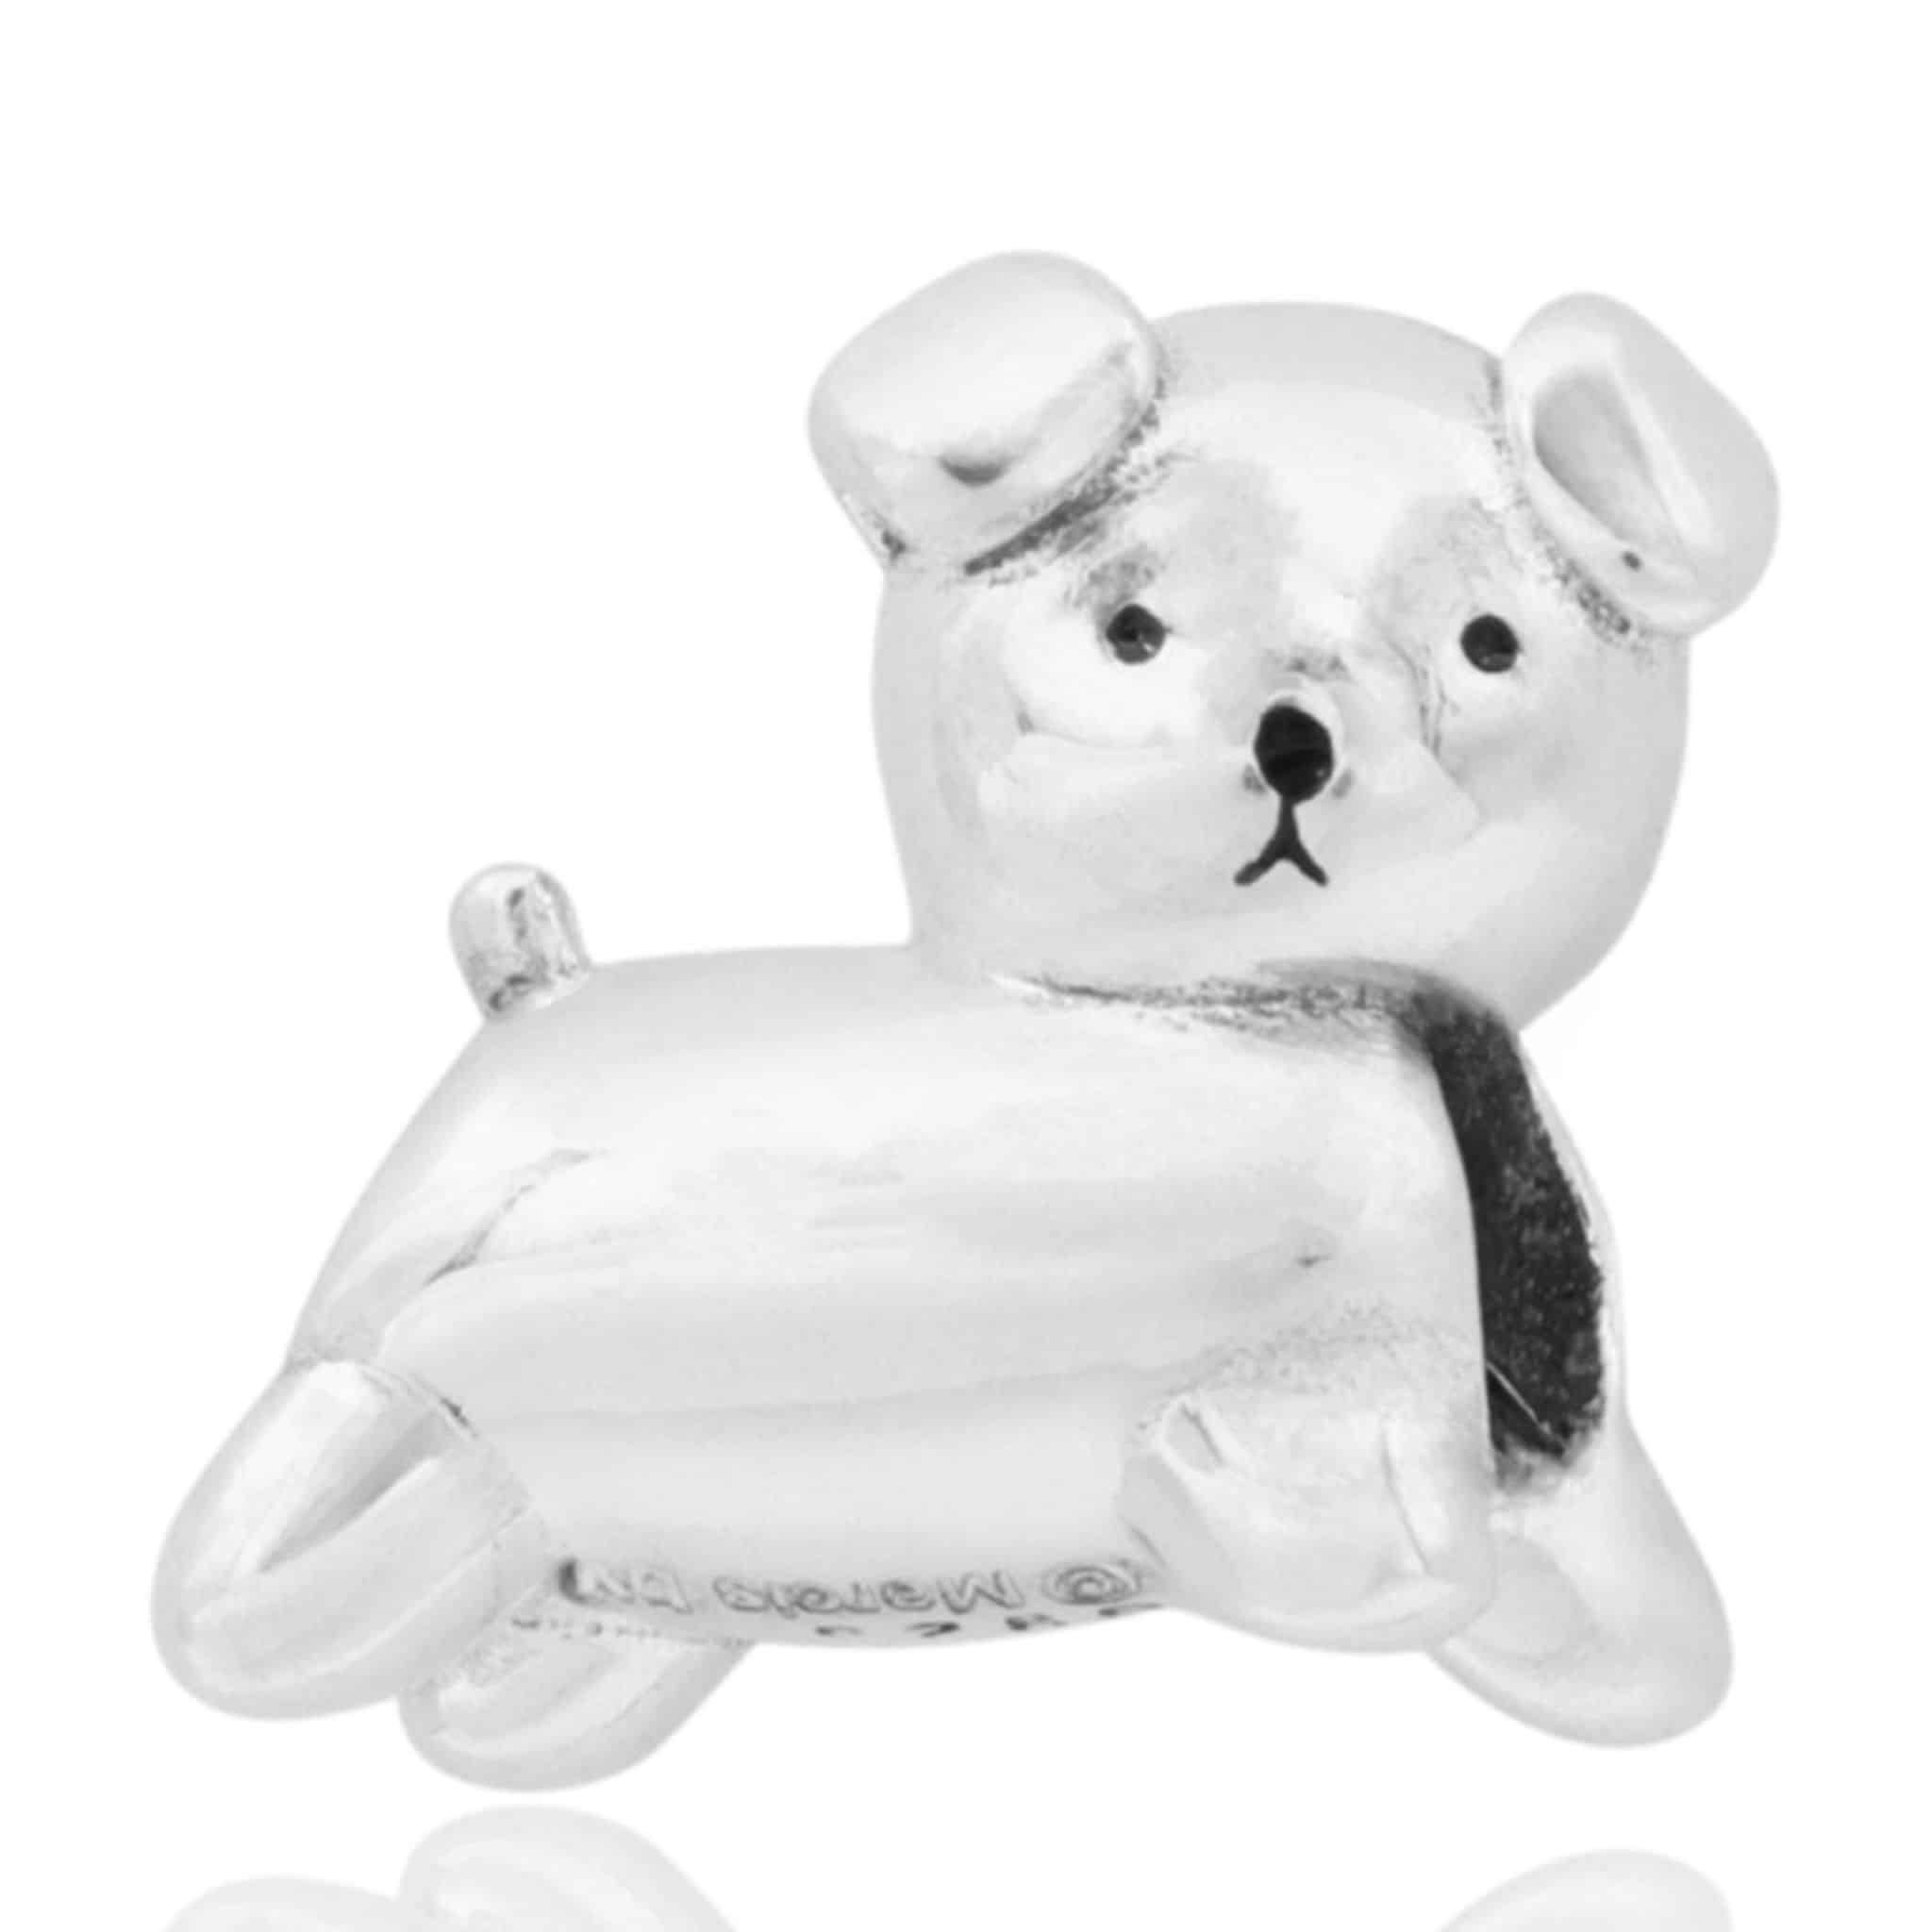 Afbeelding Product Vooraanzicht van onze lieve snuffie bead uit de nijntje collectie. Het hondje van nijntje heet snuffie en is gemaakt van 925 sterling zilver. De hond van miffy is een bead.